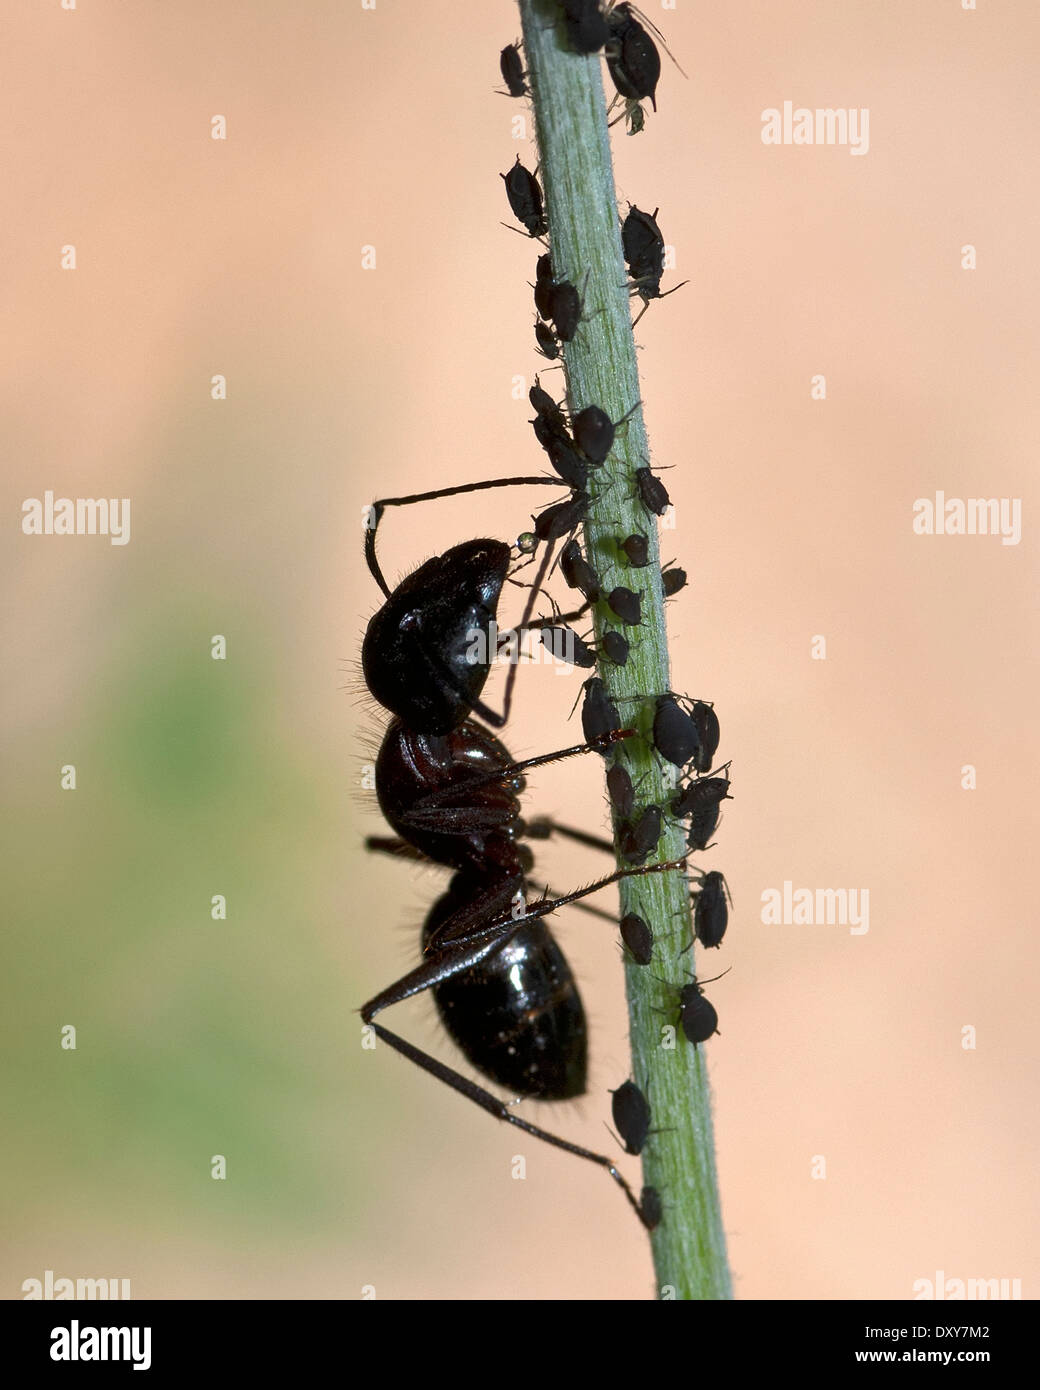 Ameise sammeln Honigtau aus einer Blattlaus Stockfoto